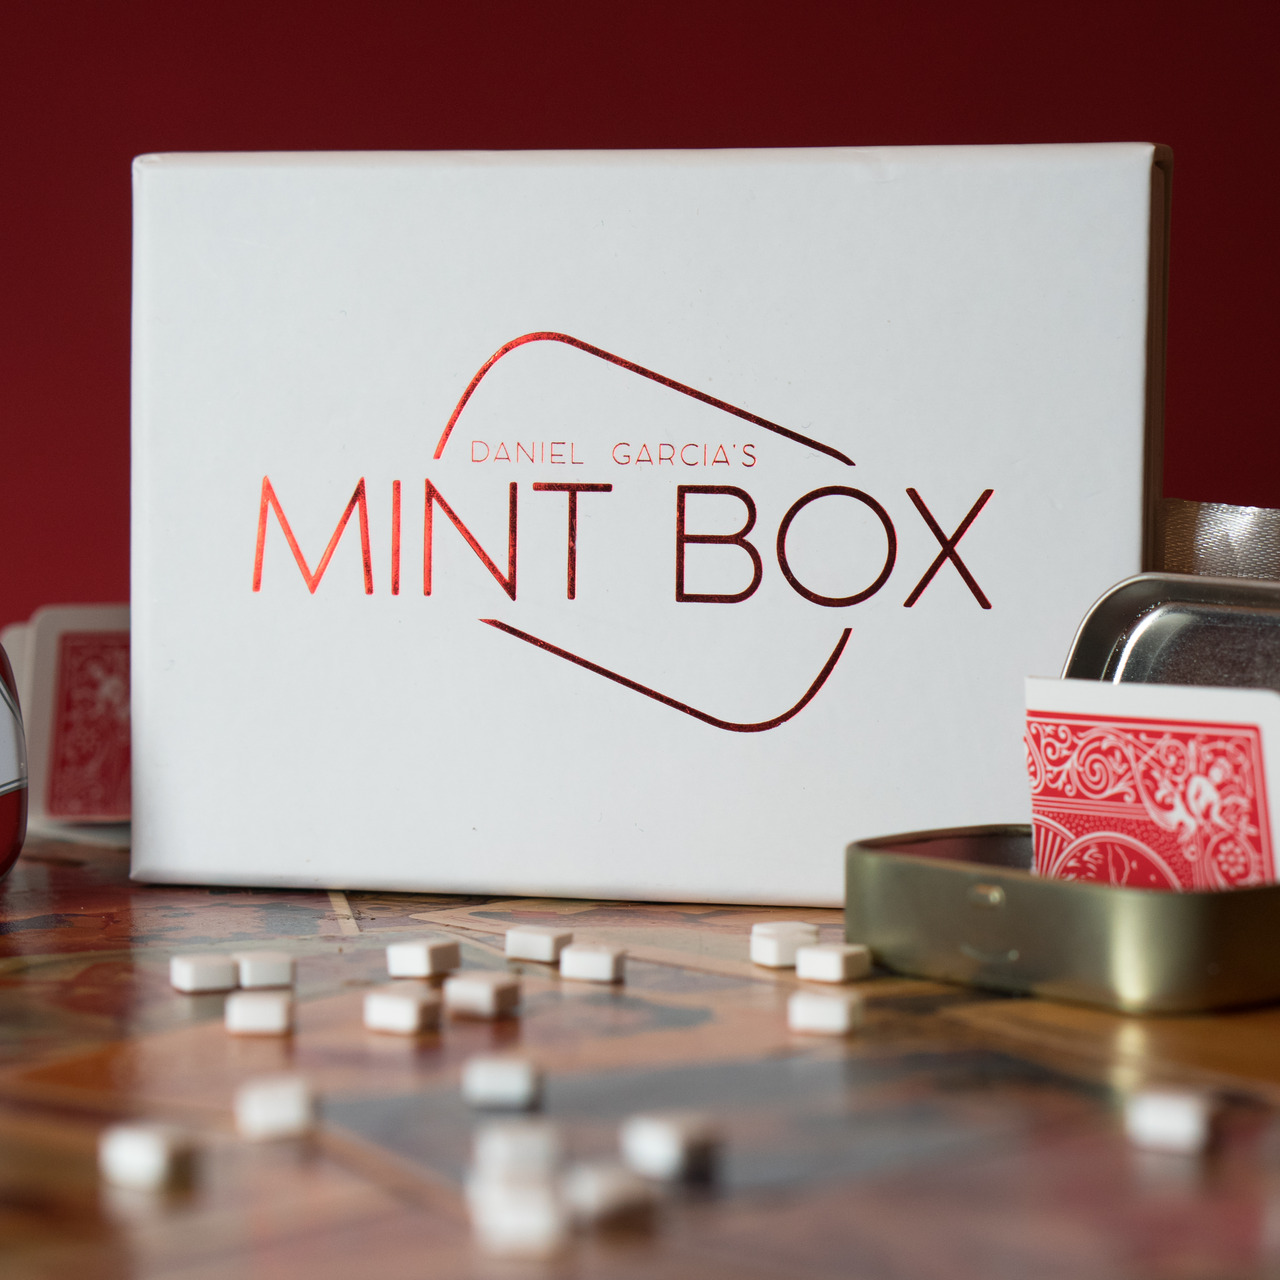 Daniel Garcia - Mint Box